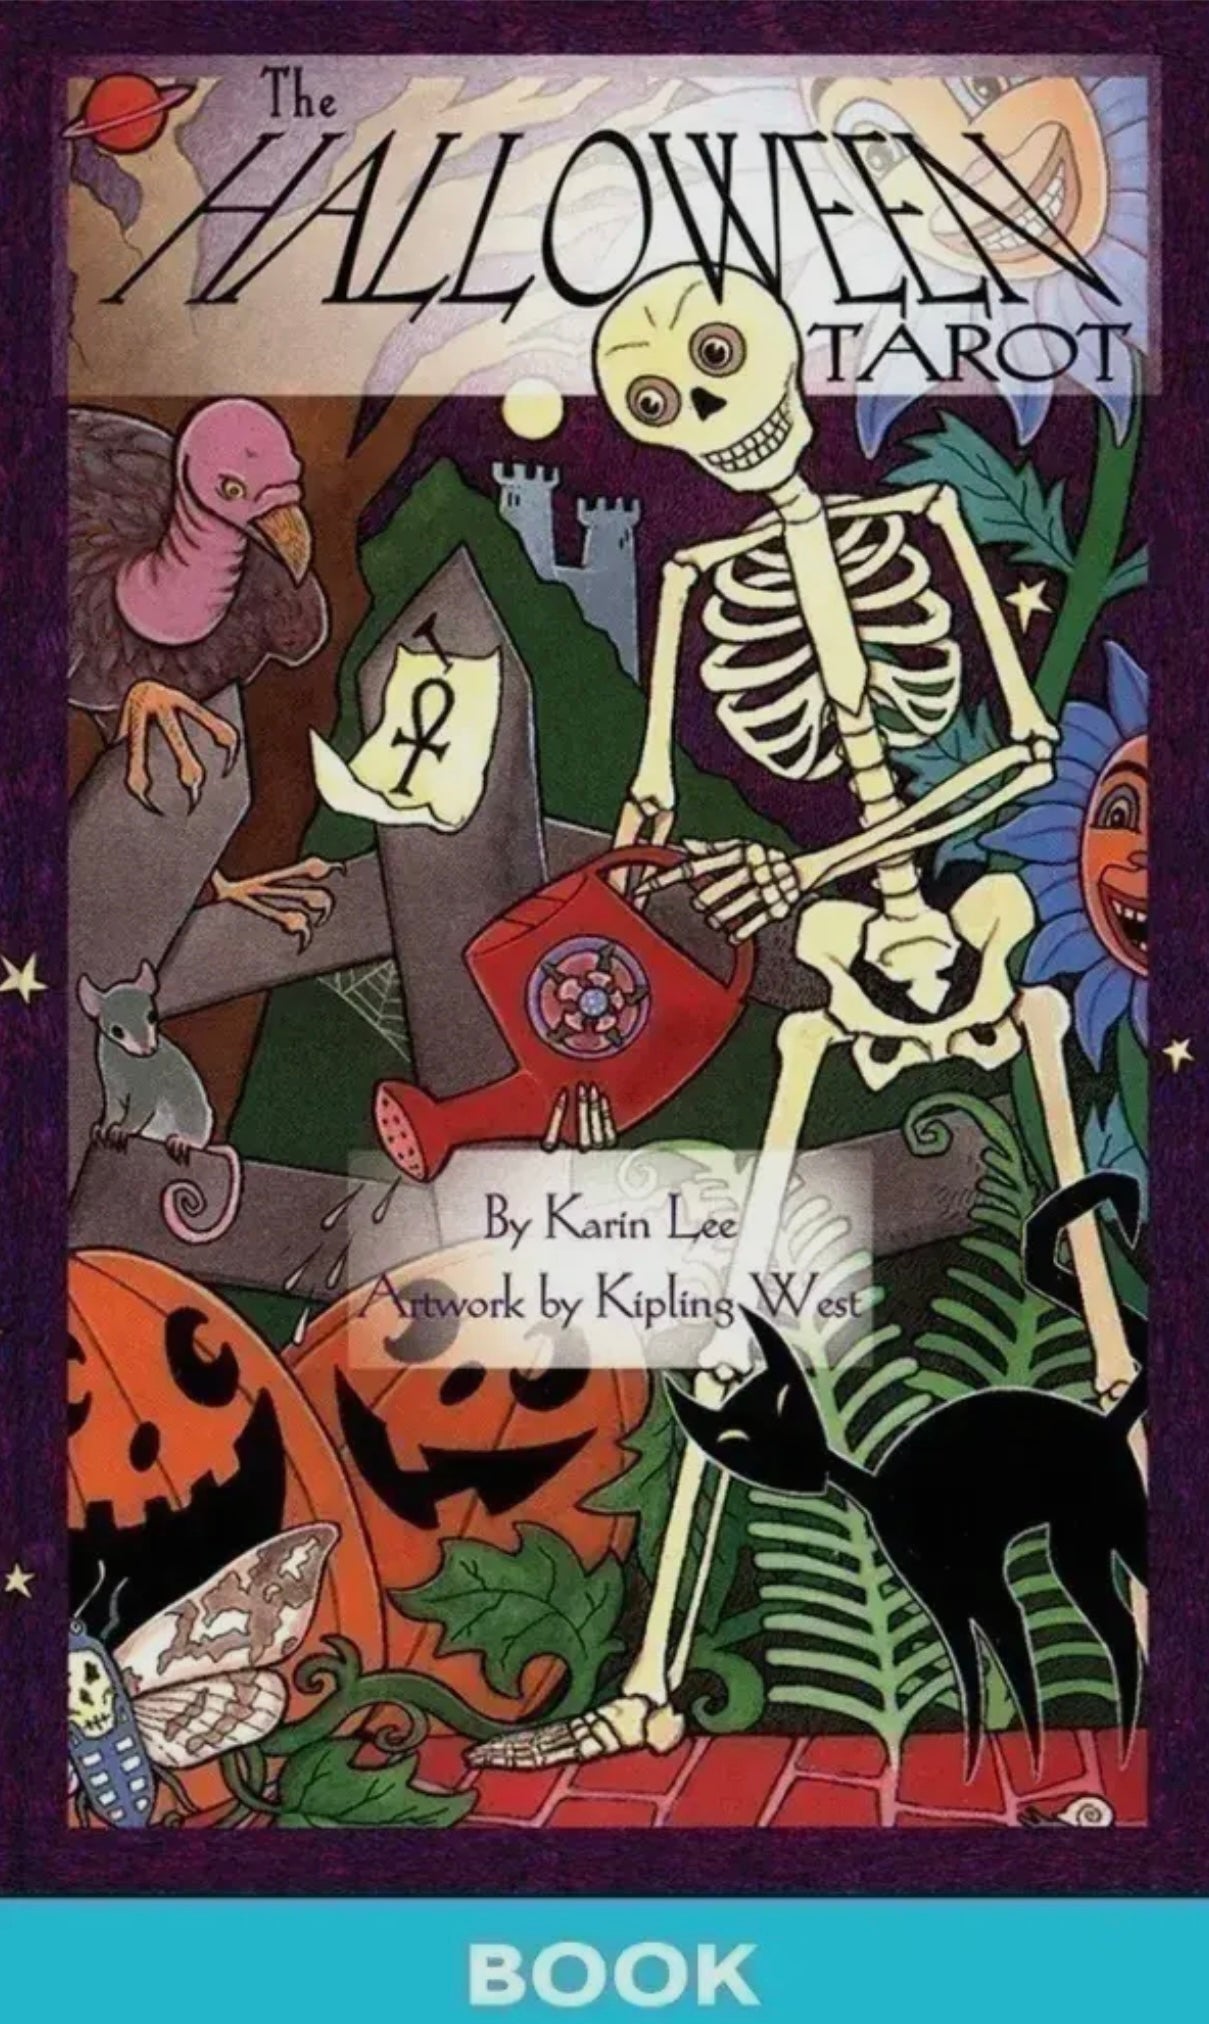 The Halloween Tarot Deck & Book Set